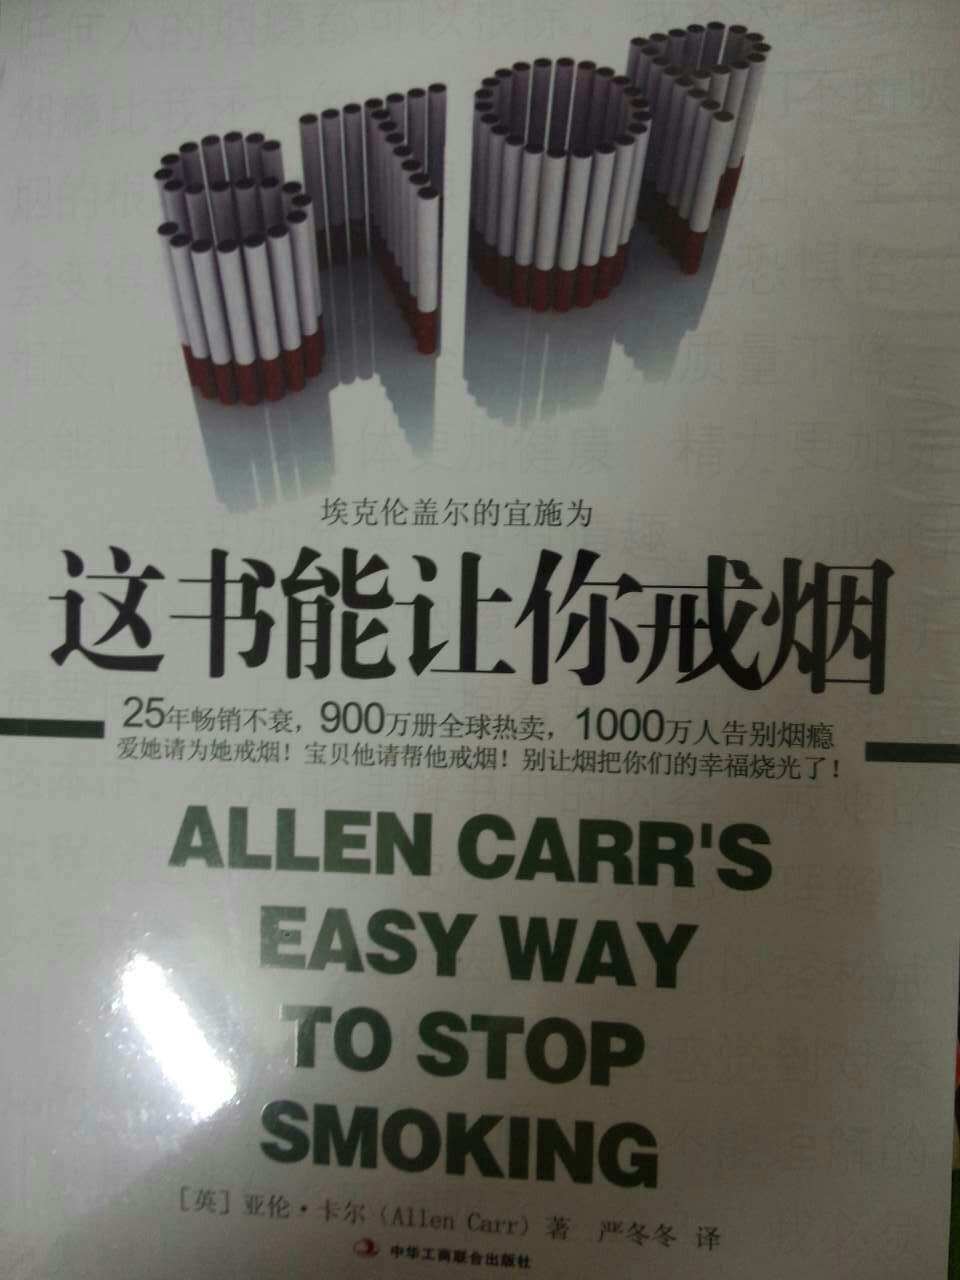 《这书能让你戒烟》的封面的翻译是否正确? -